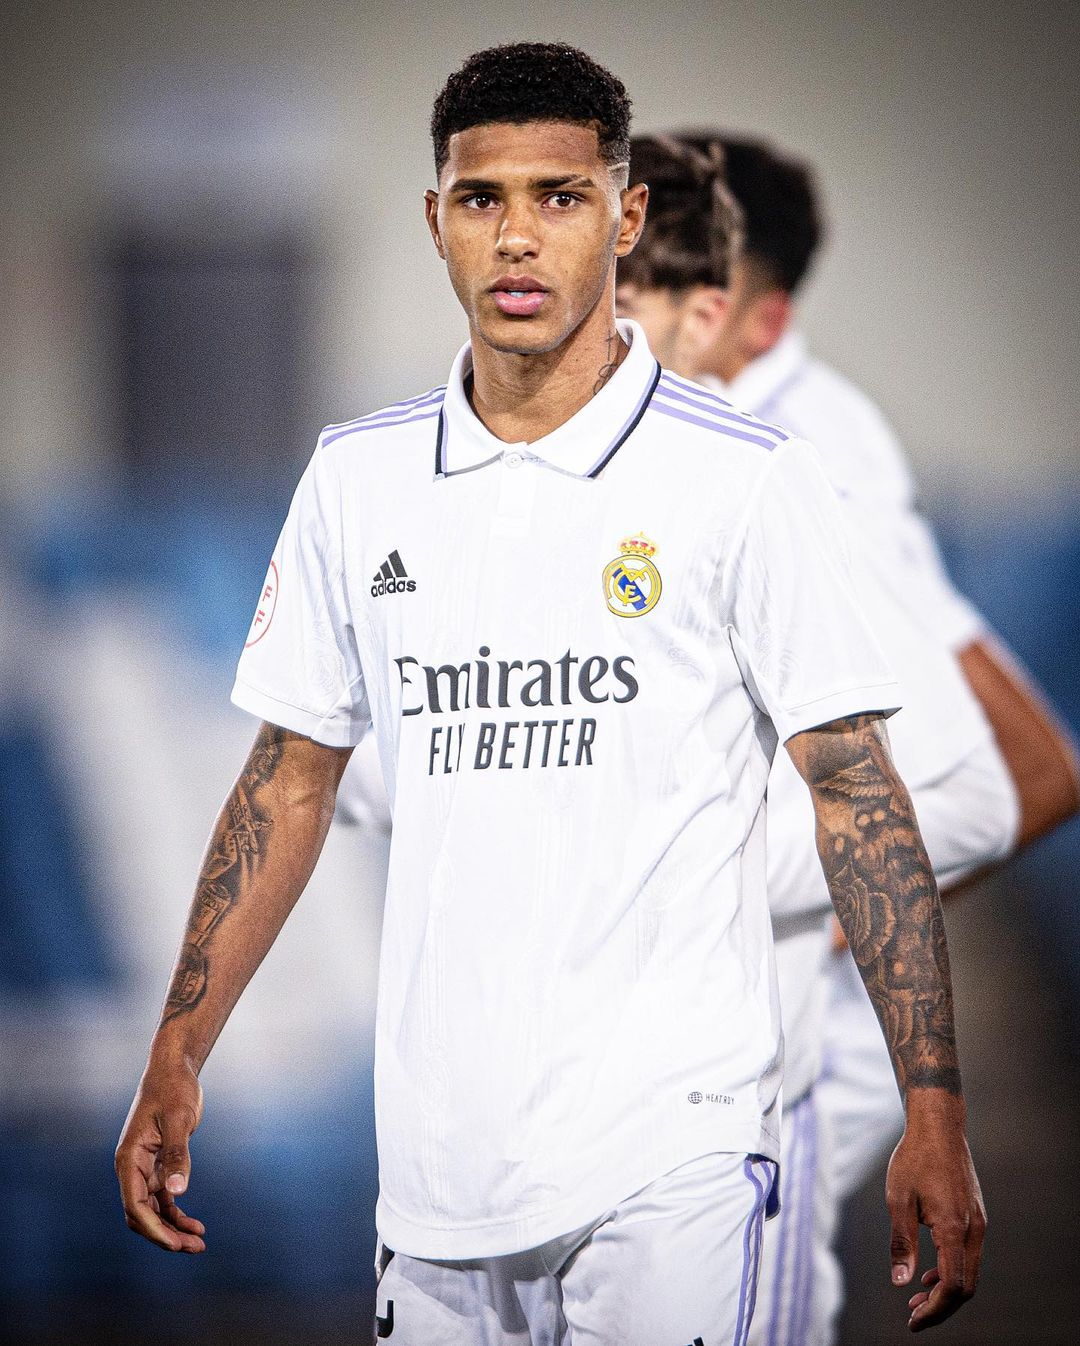 Oficial: Vinicius Tobias, ex-Internacional, é o novo jogador do Real Madrid